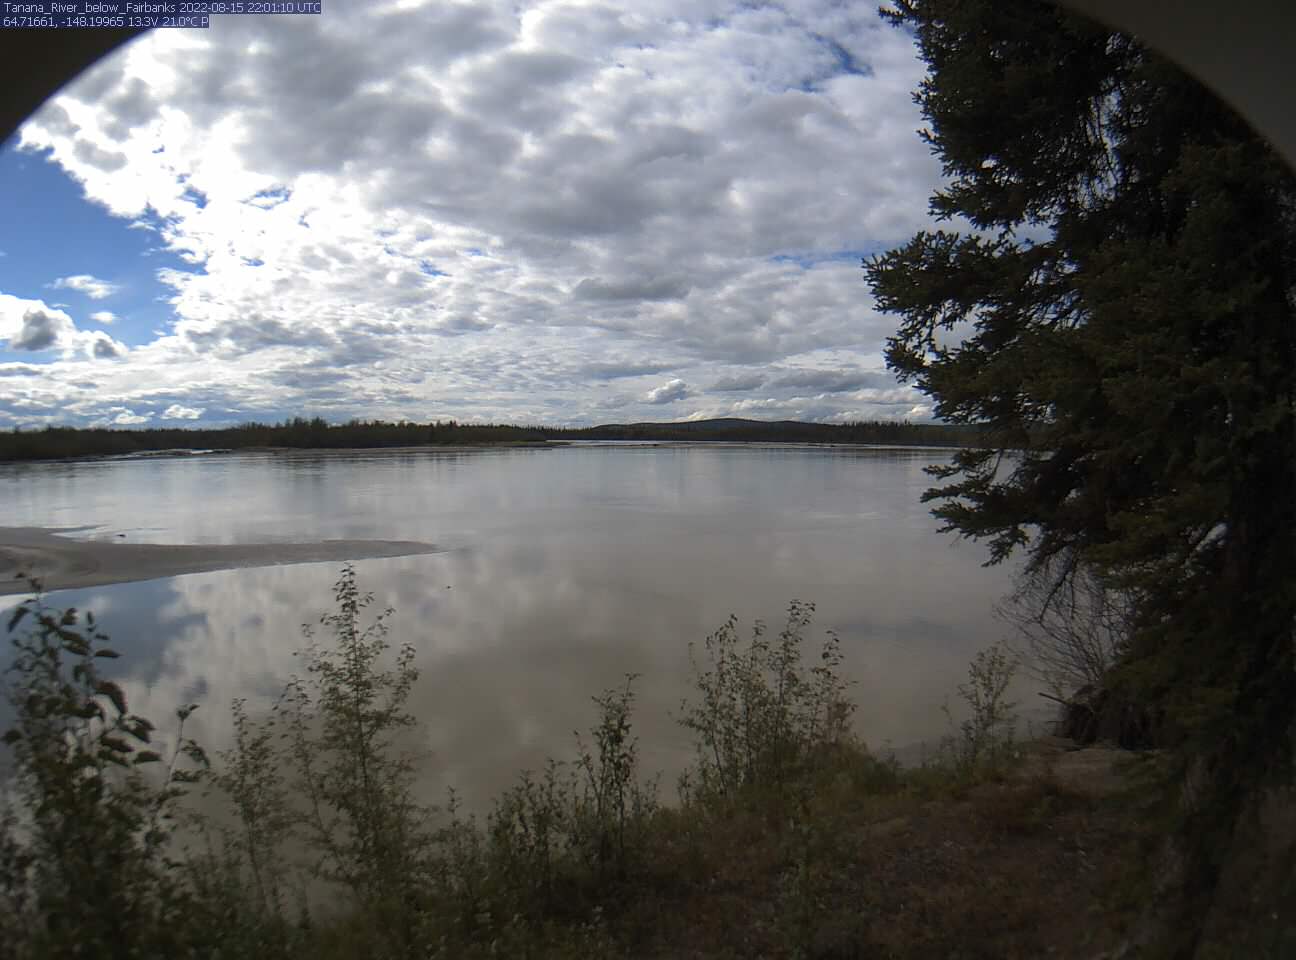 Tanana_River_below_Fairbanks_20220815220112.jpg